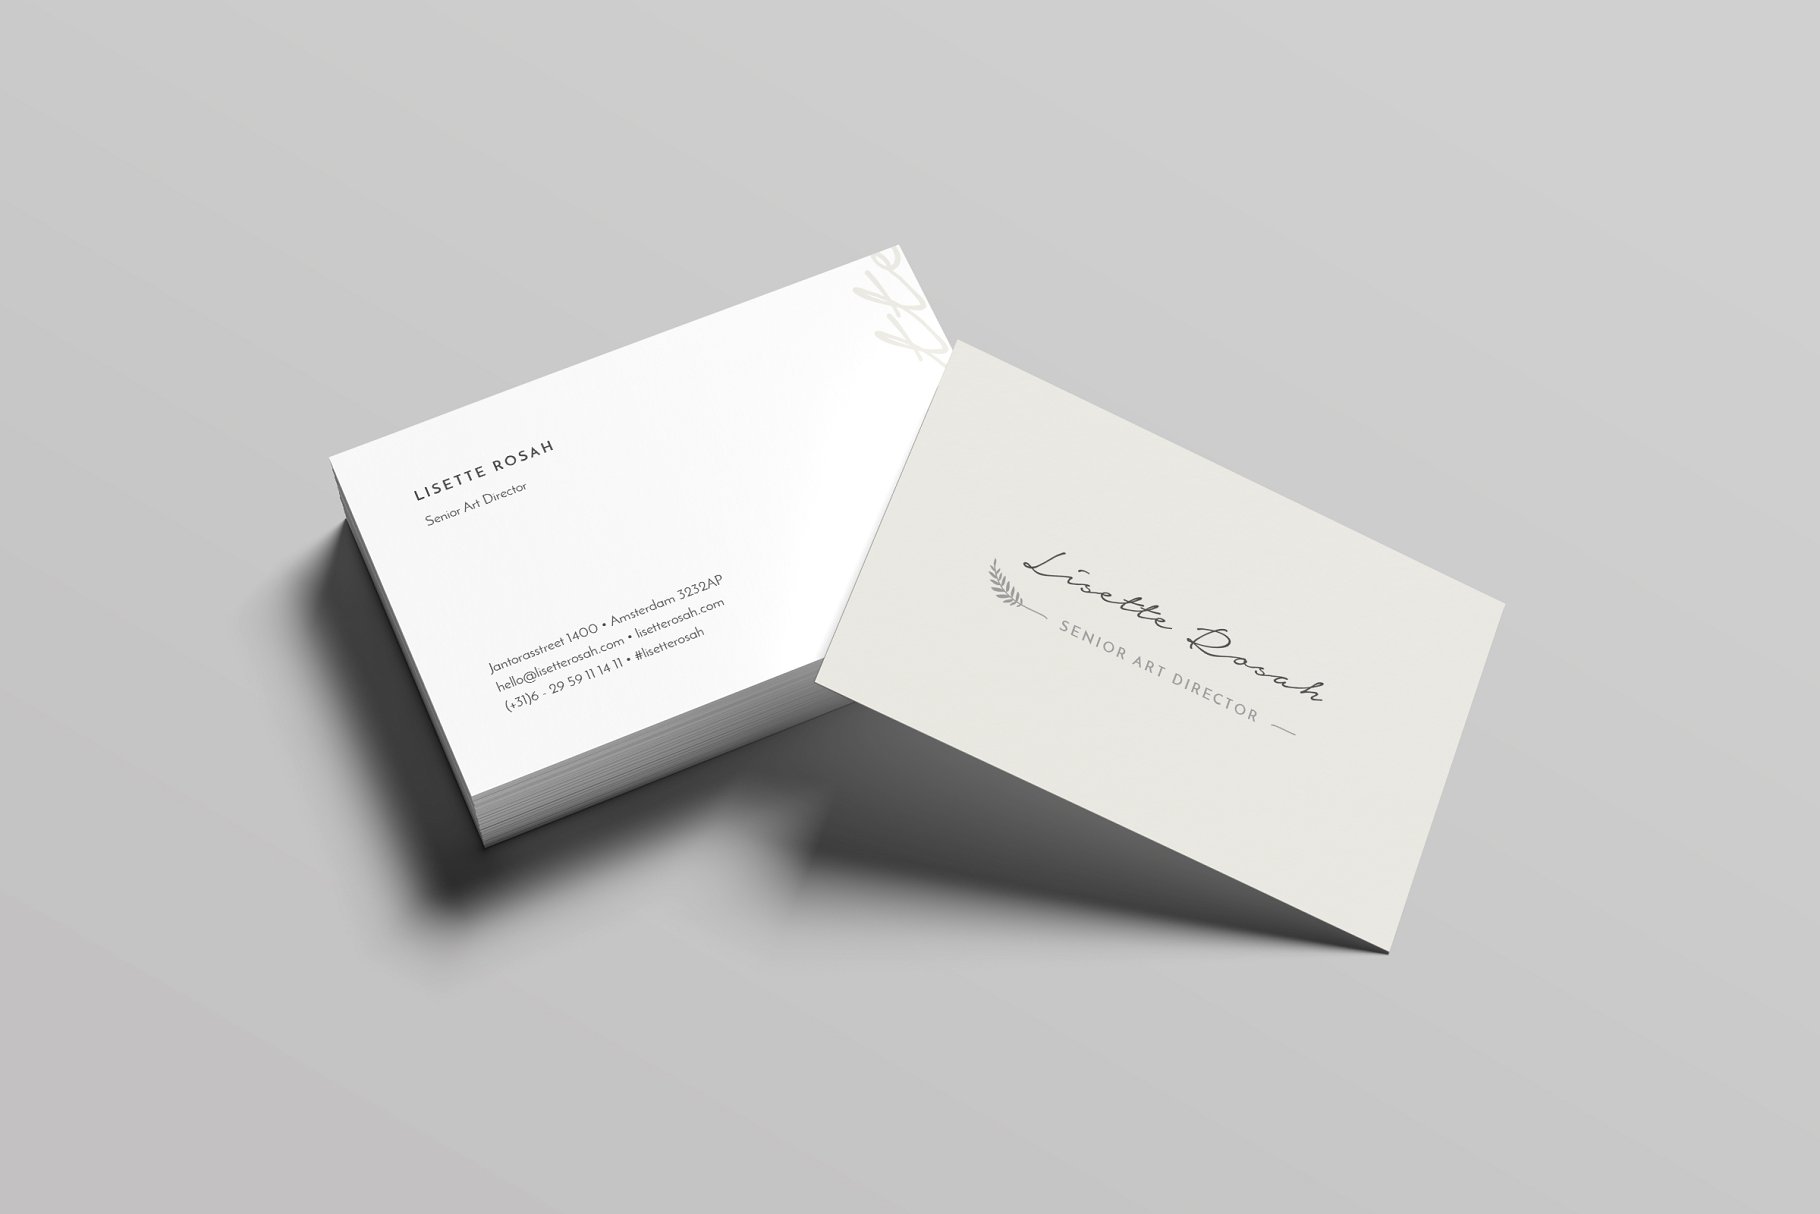 极简主义企业名片设计模板 Rosah Business Card Template插图(1)